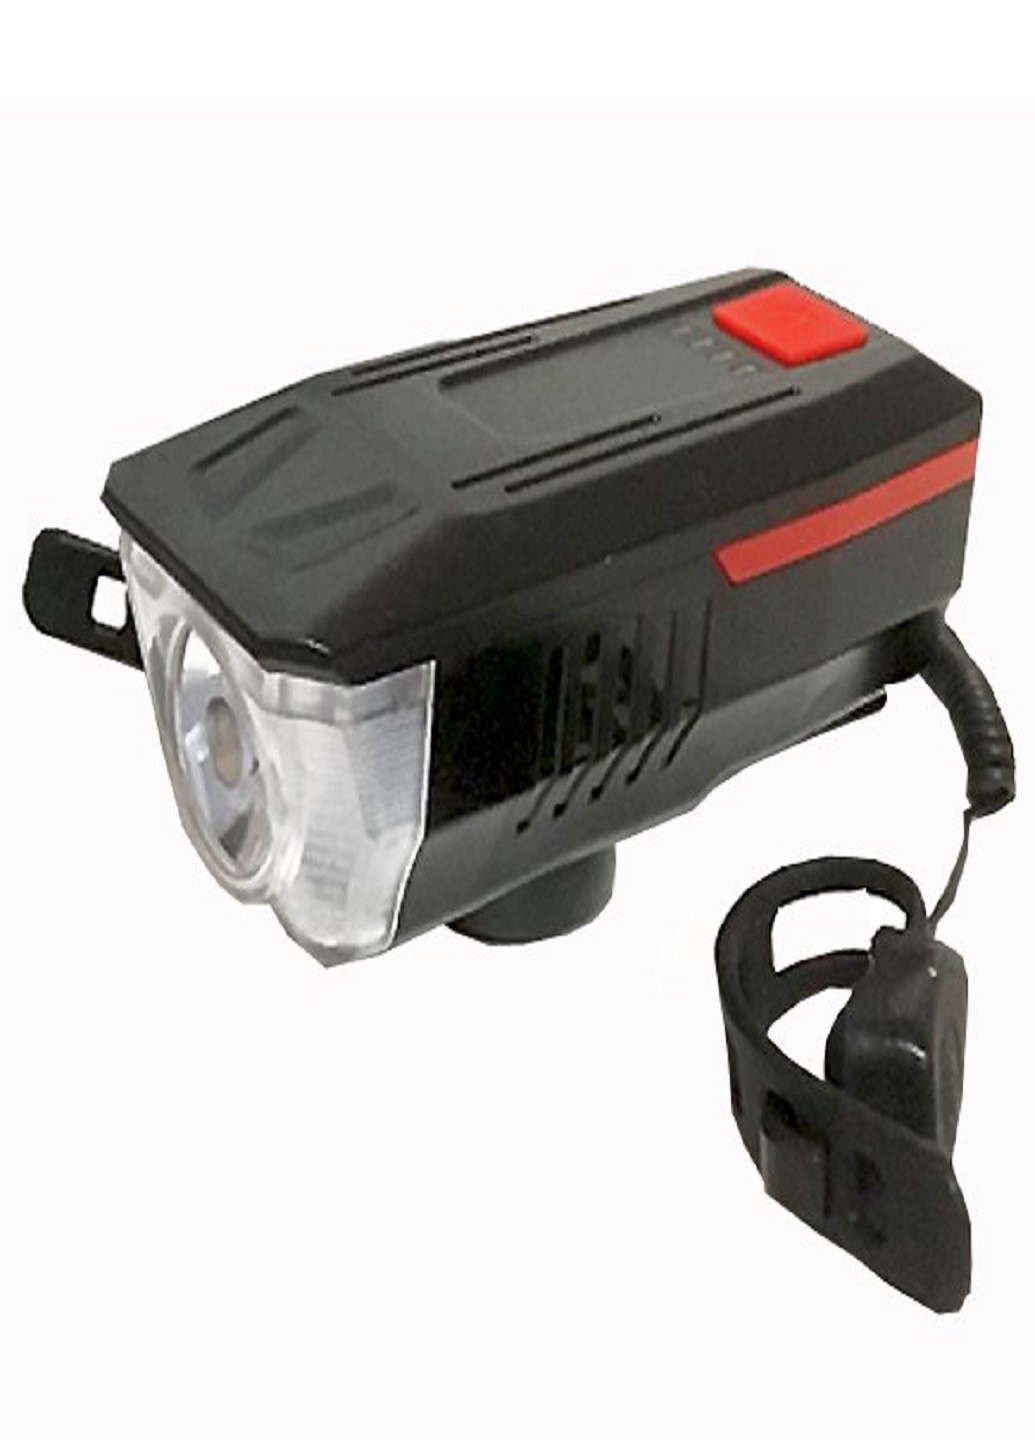 Универсальный аккумуляторный фонарь велосипедный LY-16 влагостойкий со звонком с креплением на руль Красный VTech (253499260)